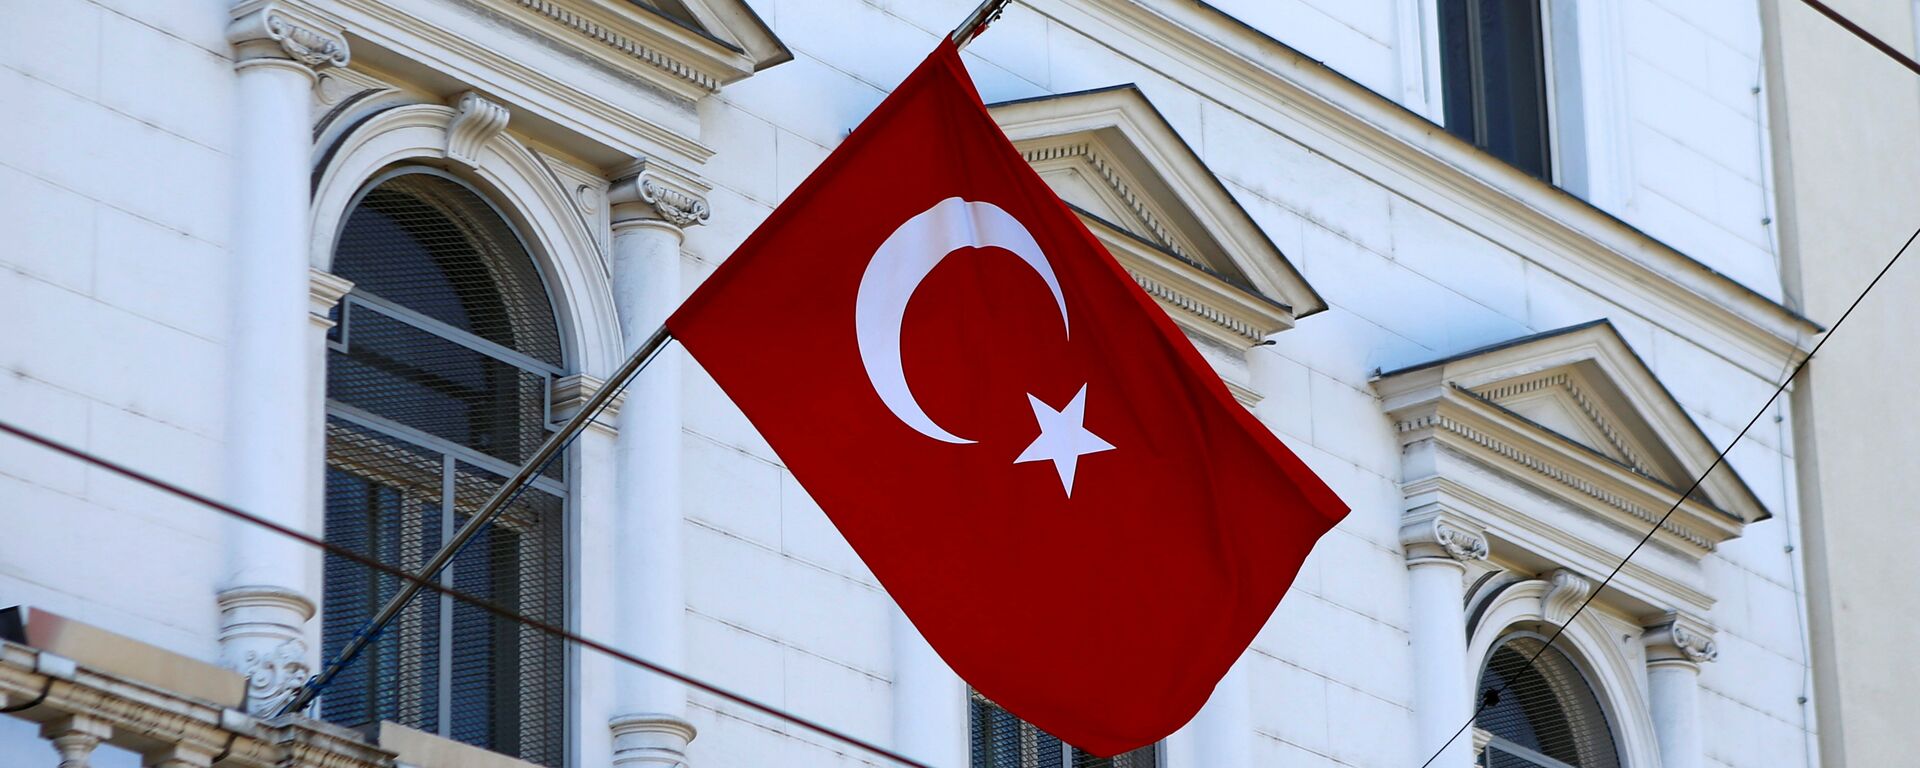 La bandera de Turquía - Sputnik Mundo, 1920, 29.03.2021